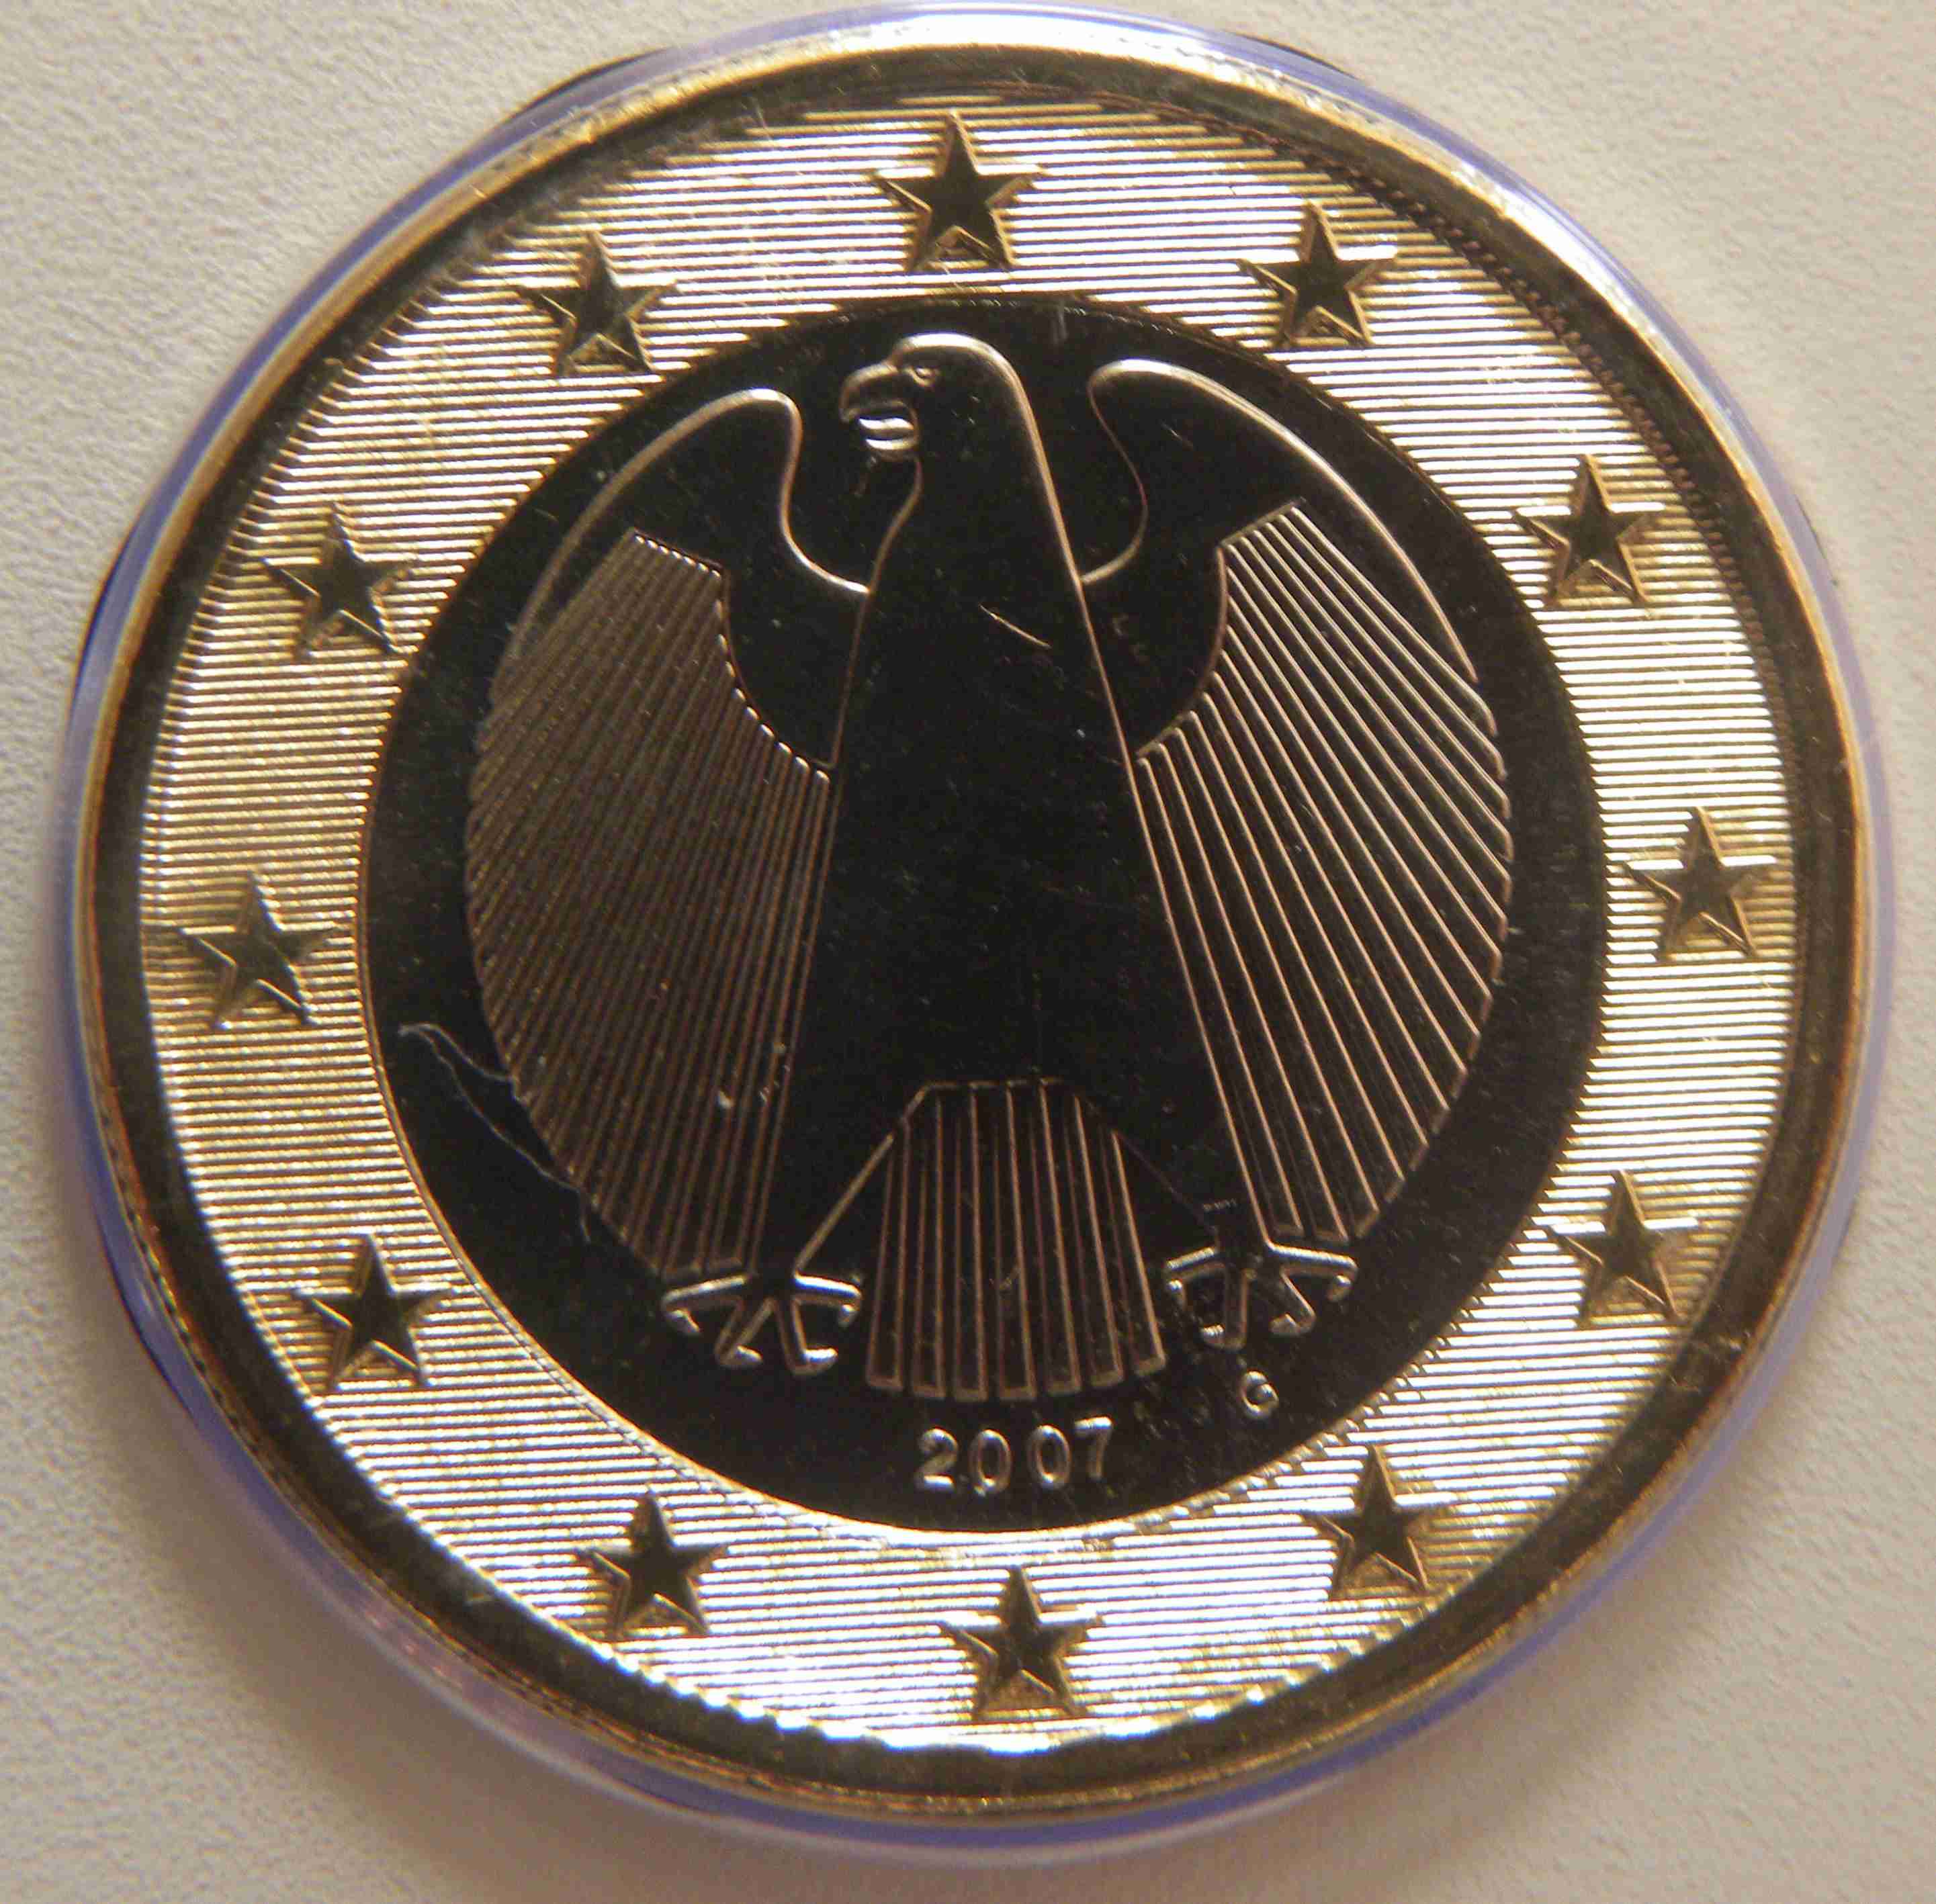 Deutschland 1 Euro Münze 2007 G - euro-muenzen.tv - Der Online